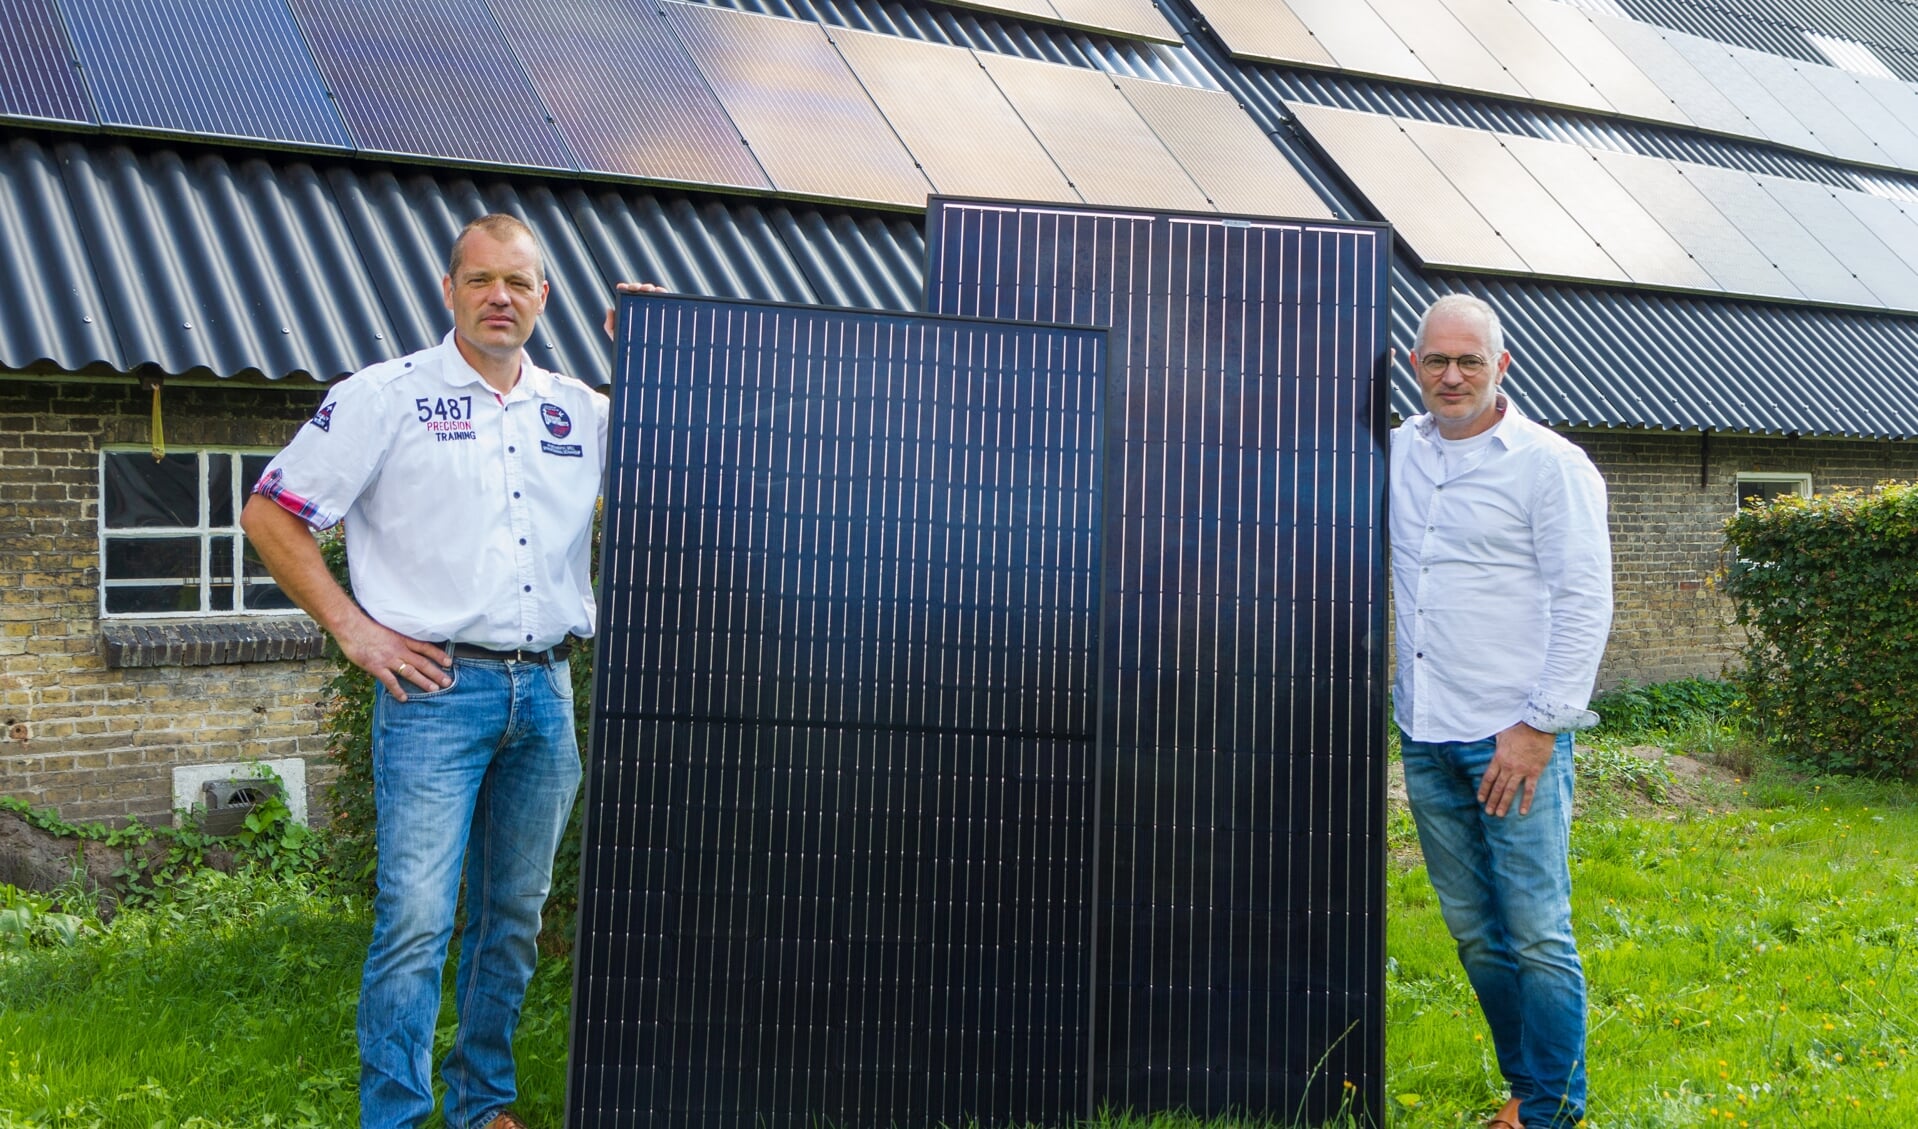 Wichard (links) toont een standaard 325 Wattpiek zonnepaneel, Jurgen staat bij het nieuwste type zonnepaneel dat een vermogen heeft van 450 Wattpiek. 